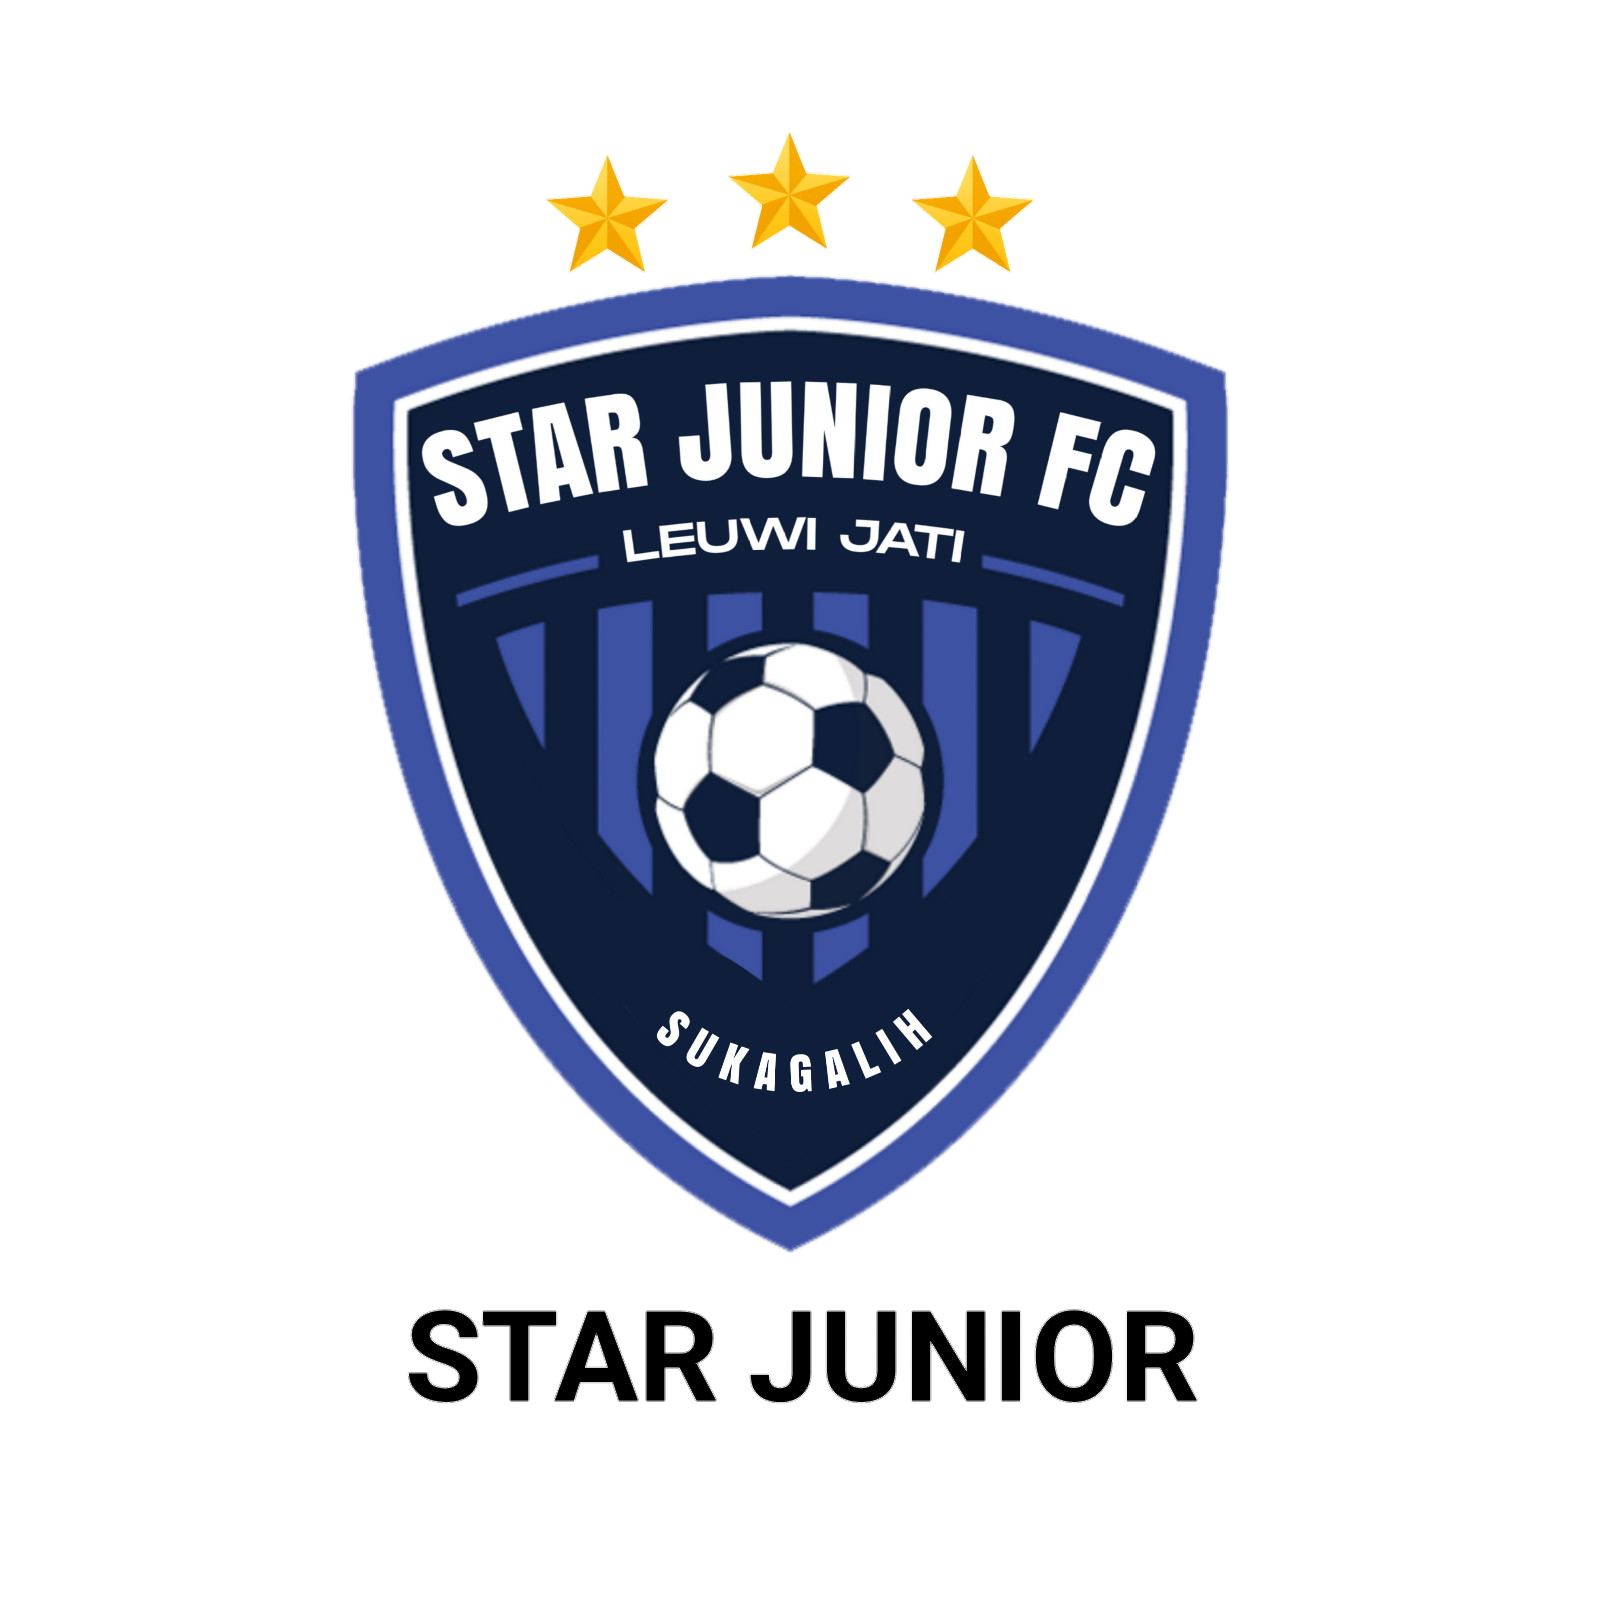 Star Junior